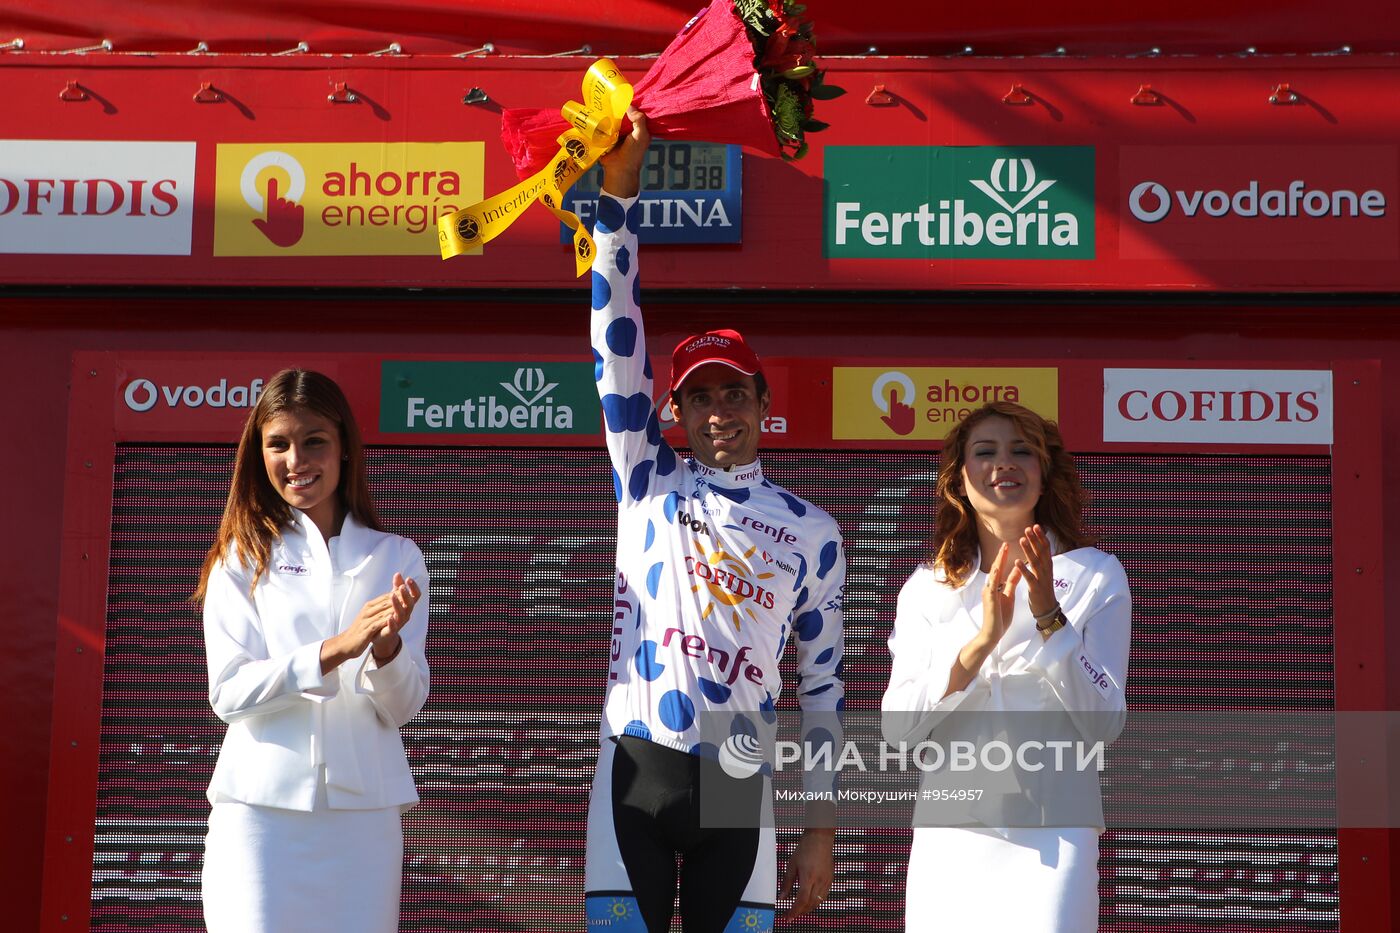 Велоспорт. "Вуэльта Испании 2011". Шестнадцатый этап